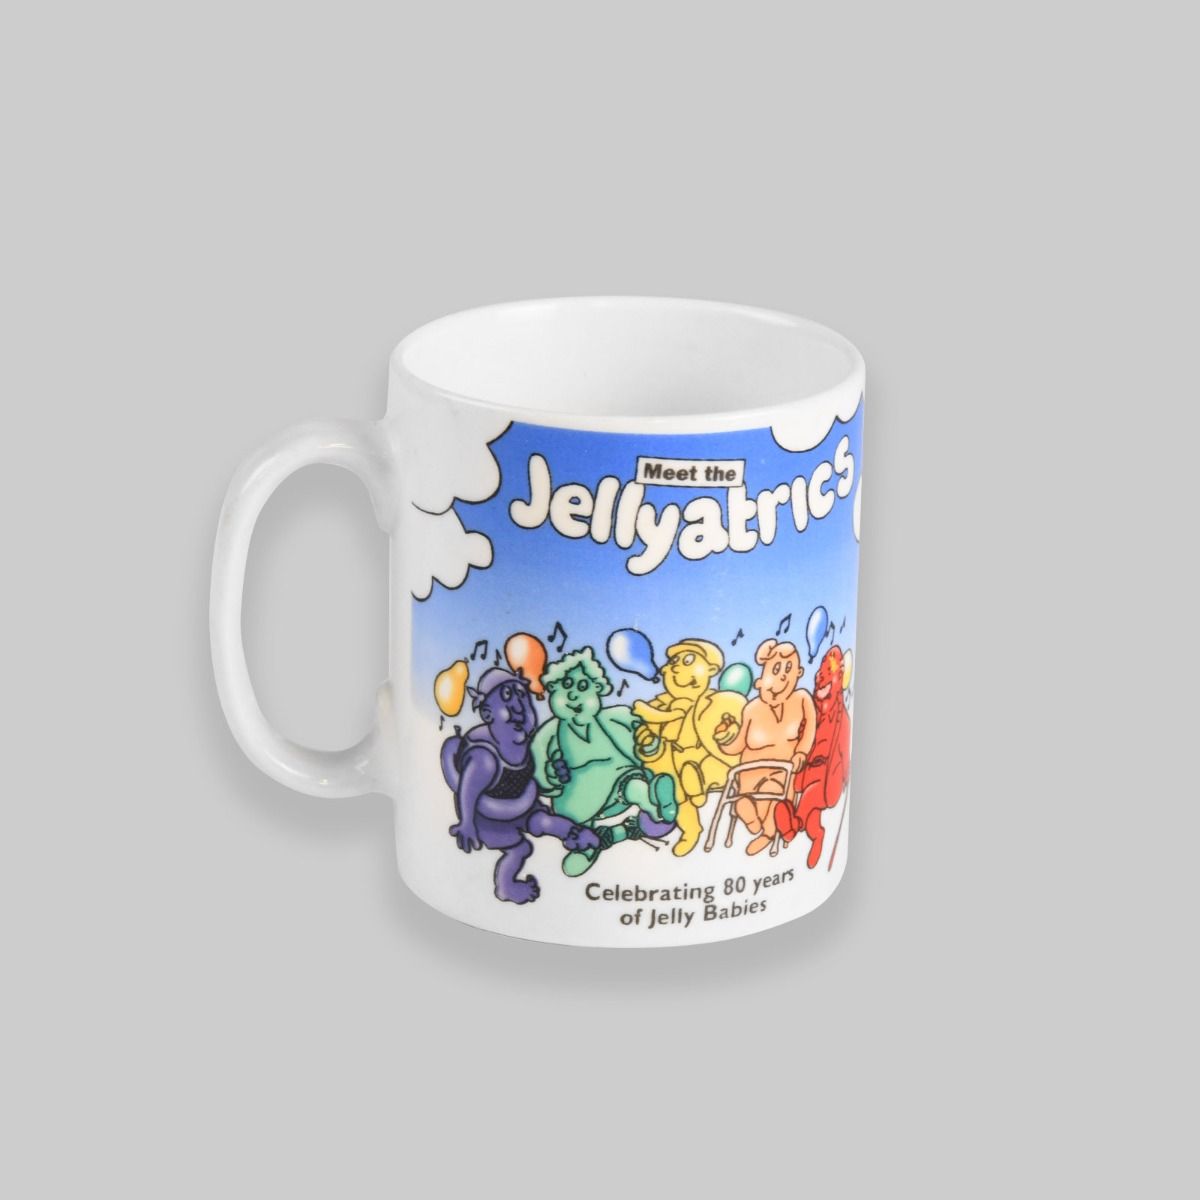 Vintage 1990s Jelly Babies Mug